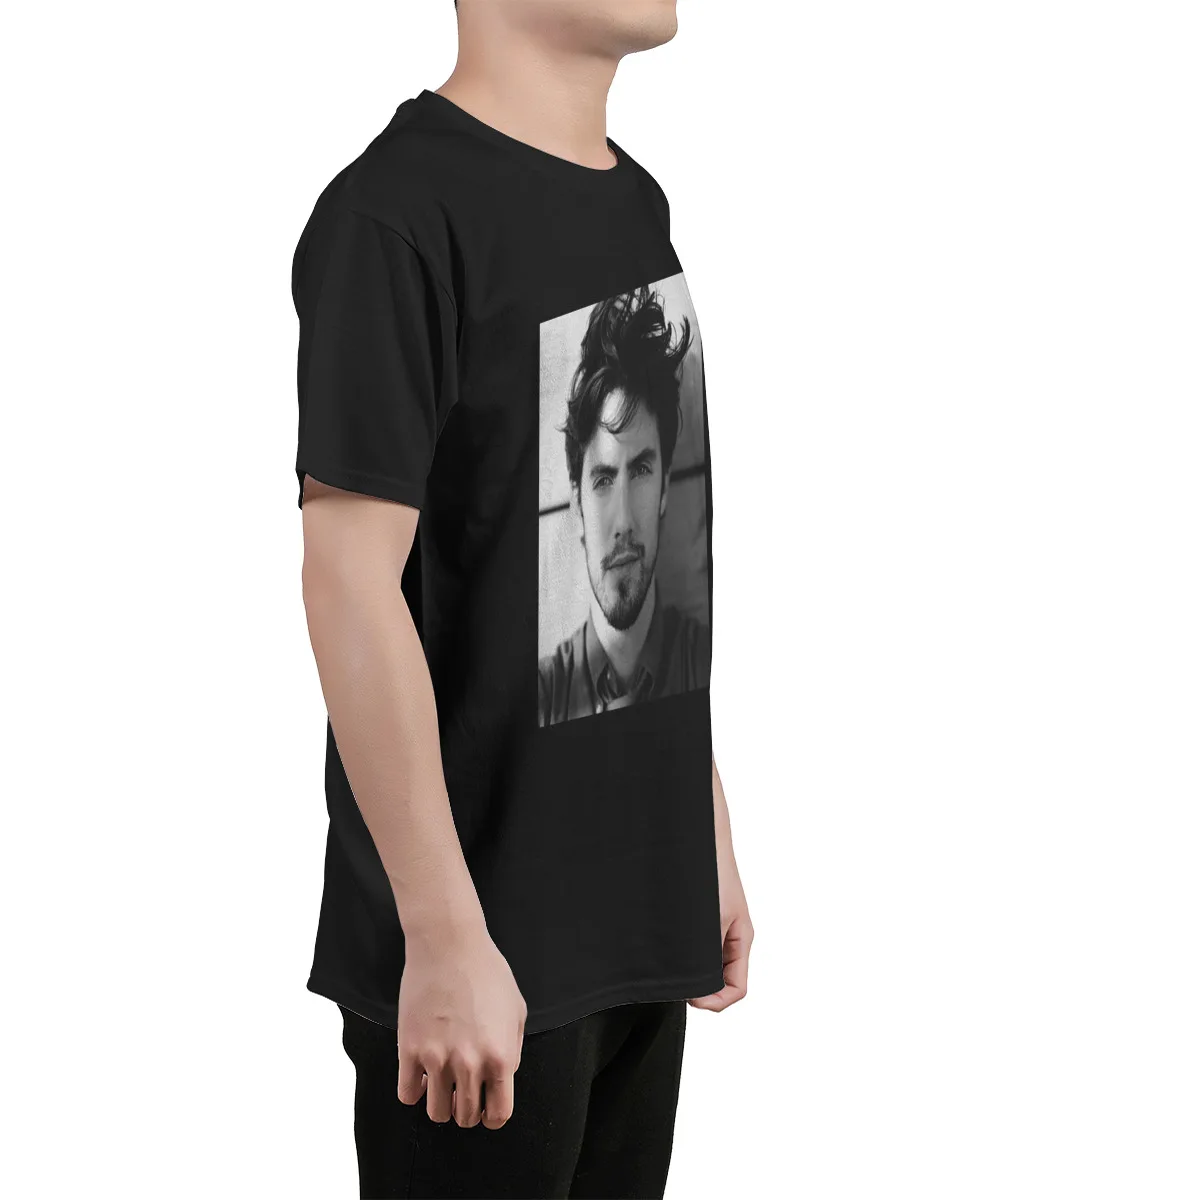 Bawełna Jess Mariano Tops Female/Man Milo Ventimiglia Koszulka Unisex Retro Handlowa Popularna graficzny t-shirt 90-Tych